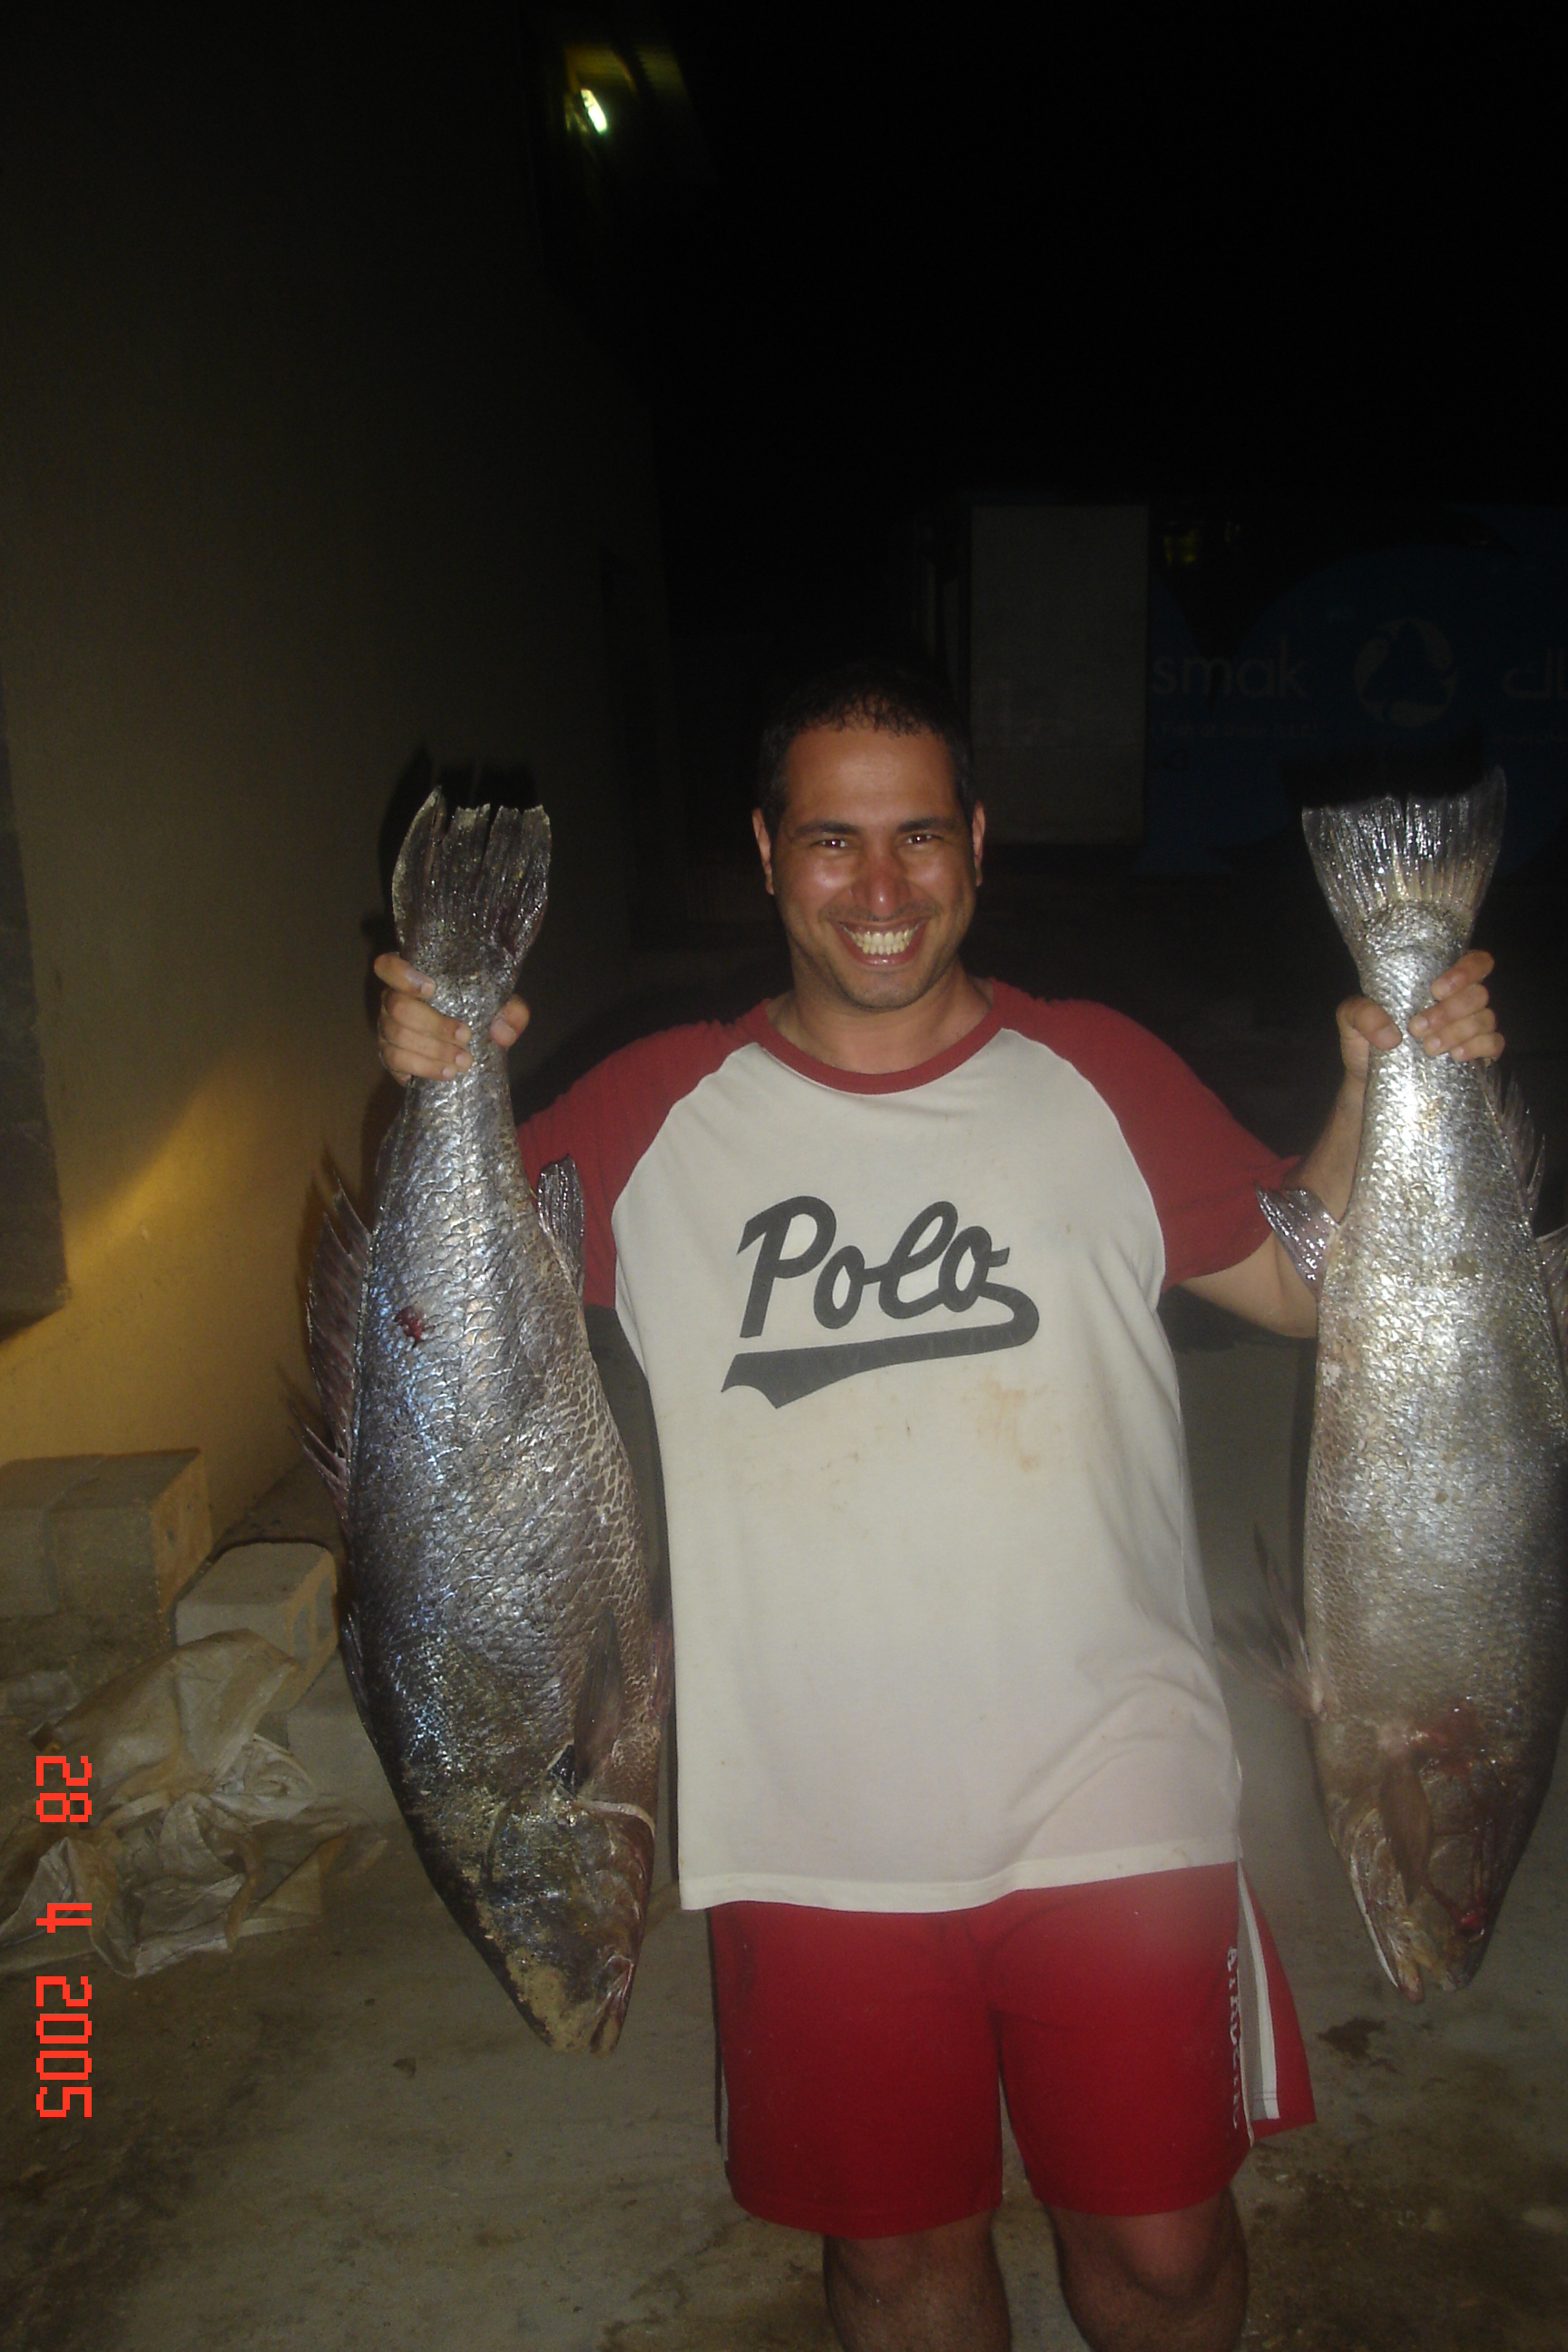 Oman Fishing